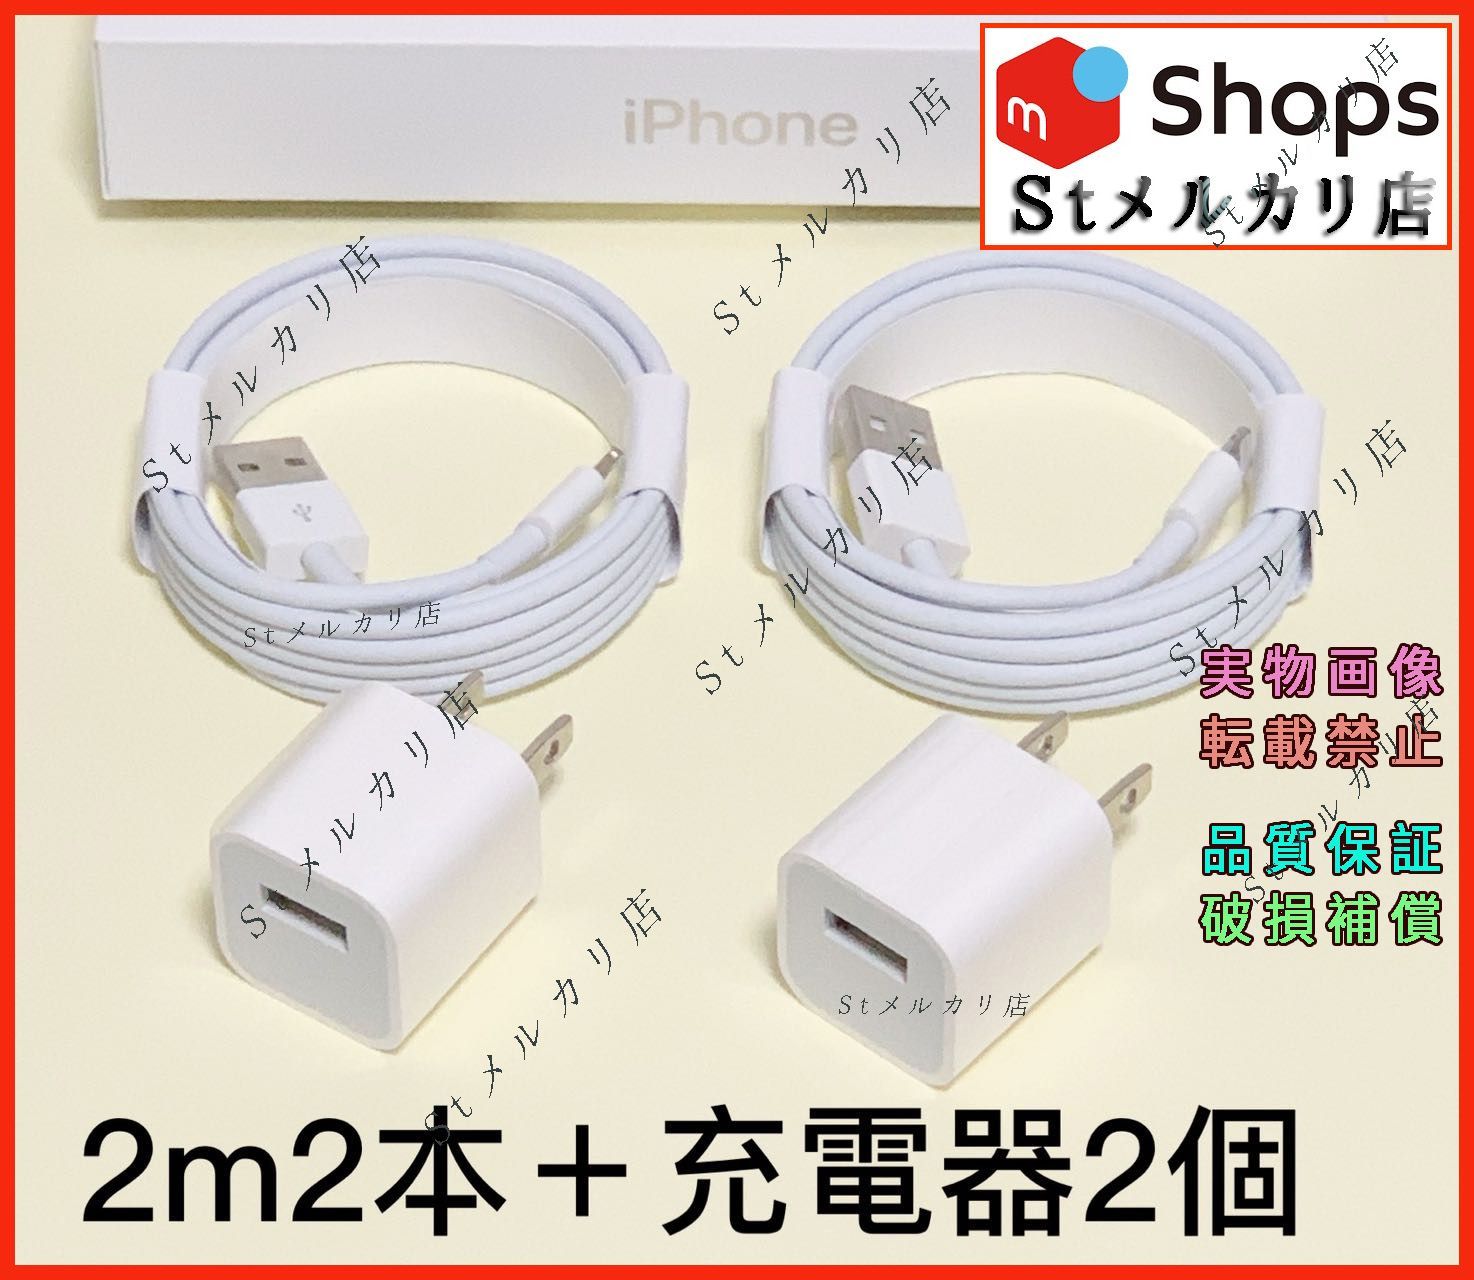 売上最激安 2m8本 iPhone 充電器ライトニングケーブル 純正品同等(Ep